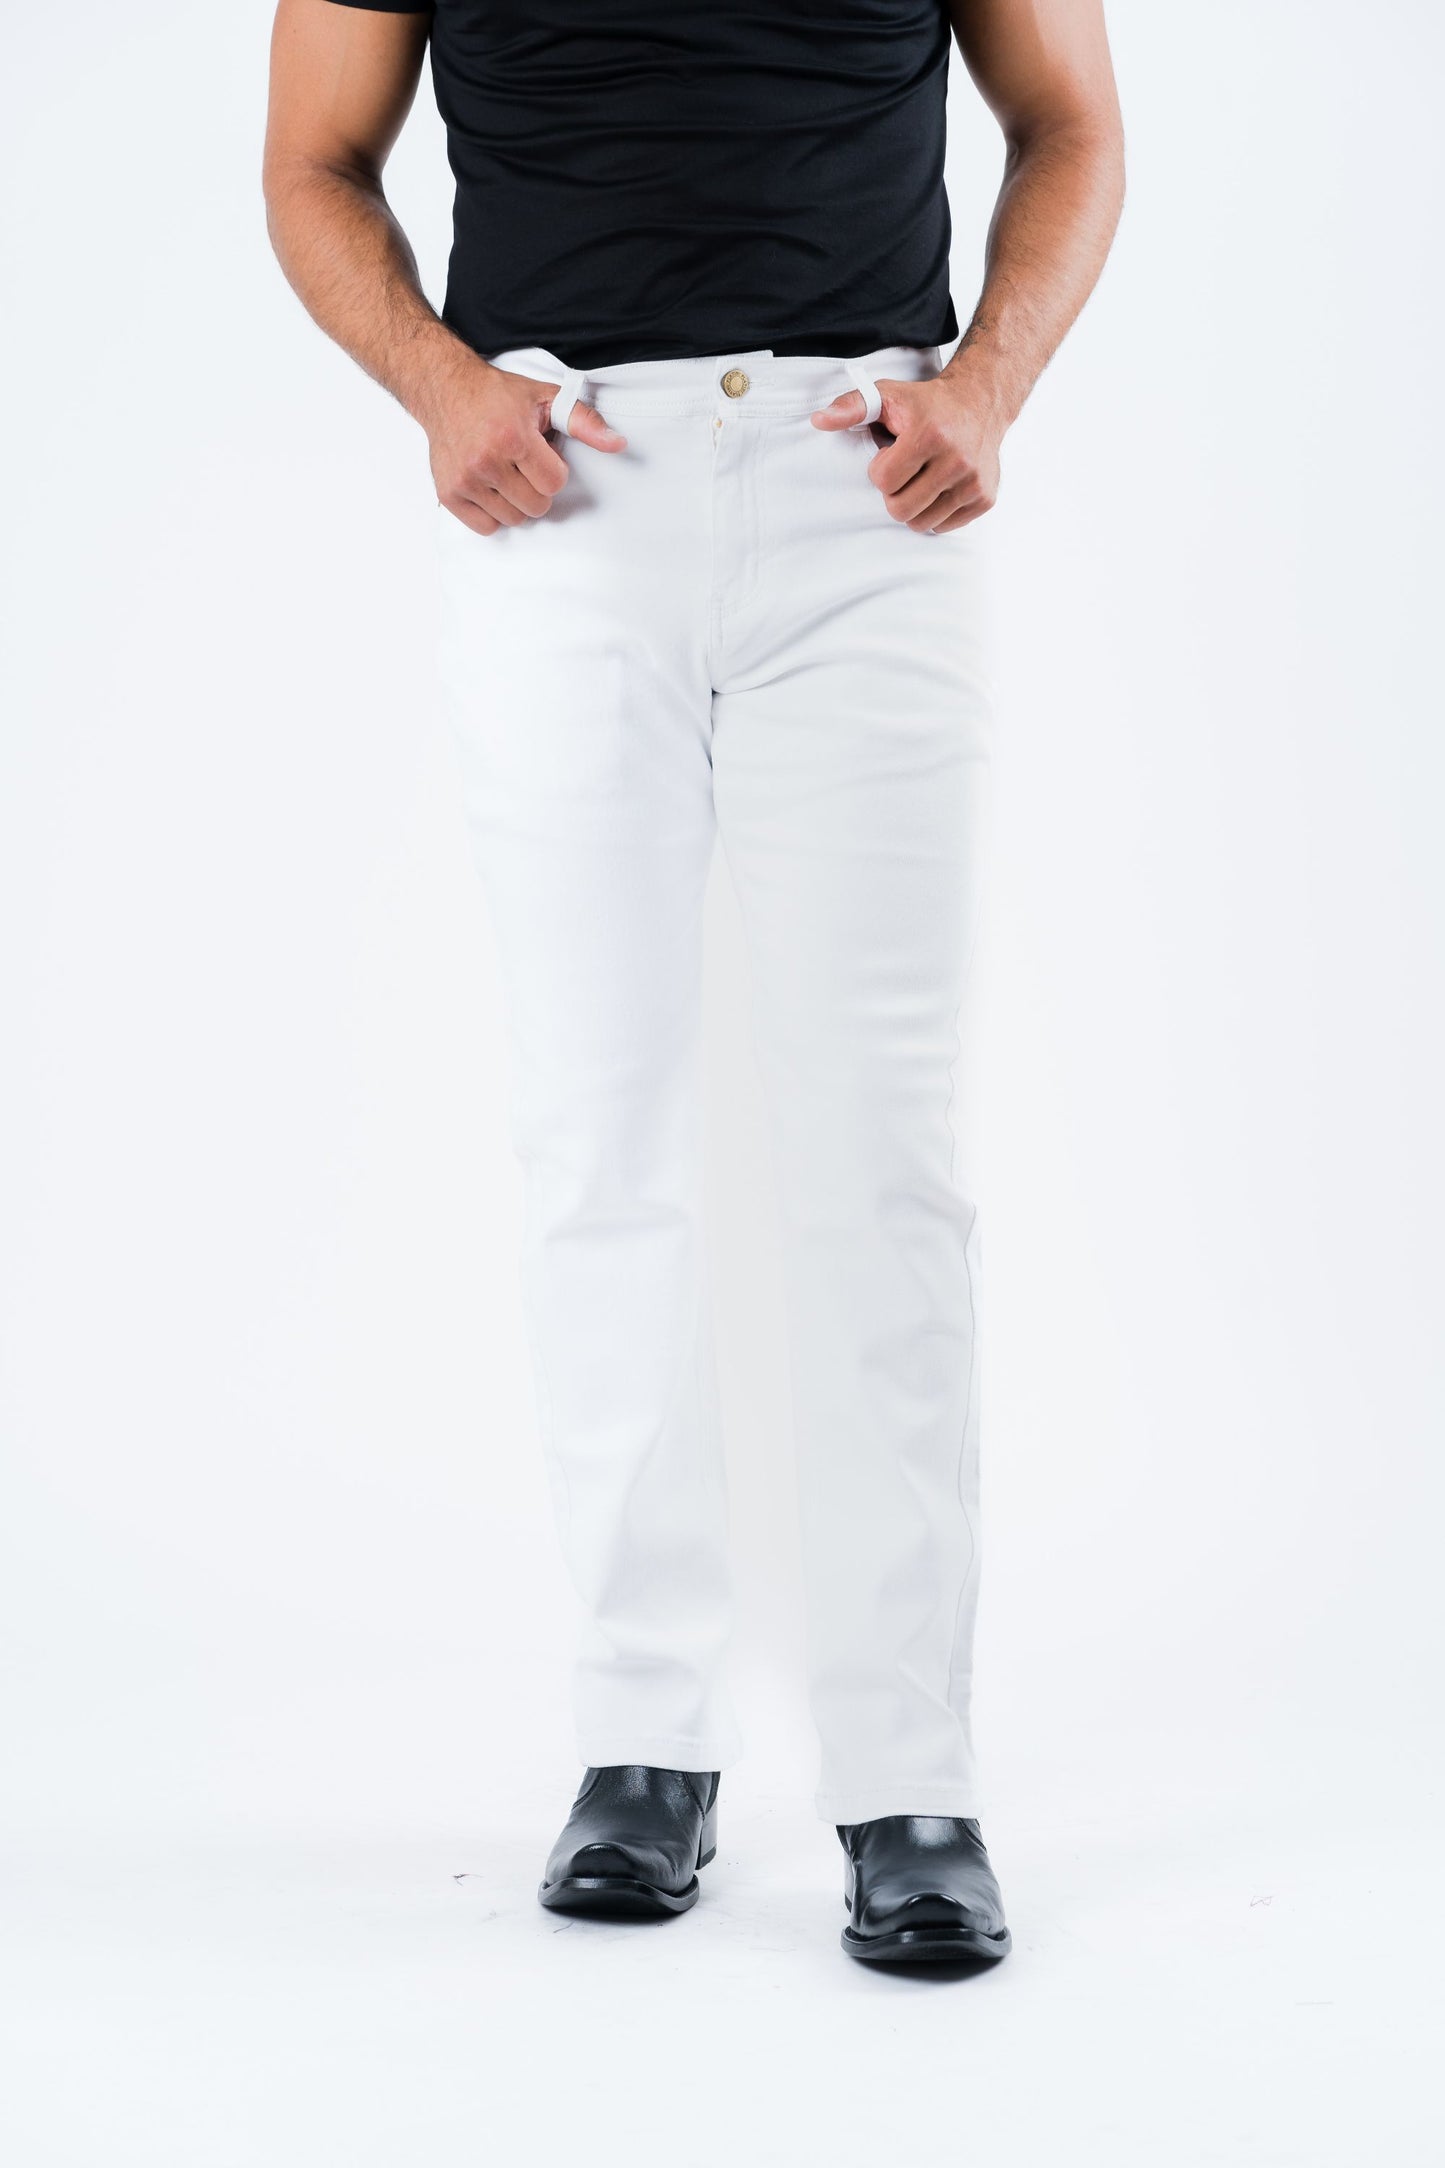 Holt Men's White Boot Cut Jeans